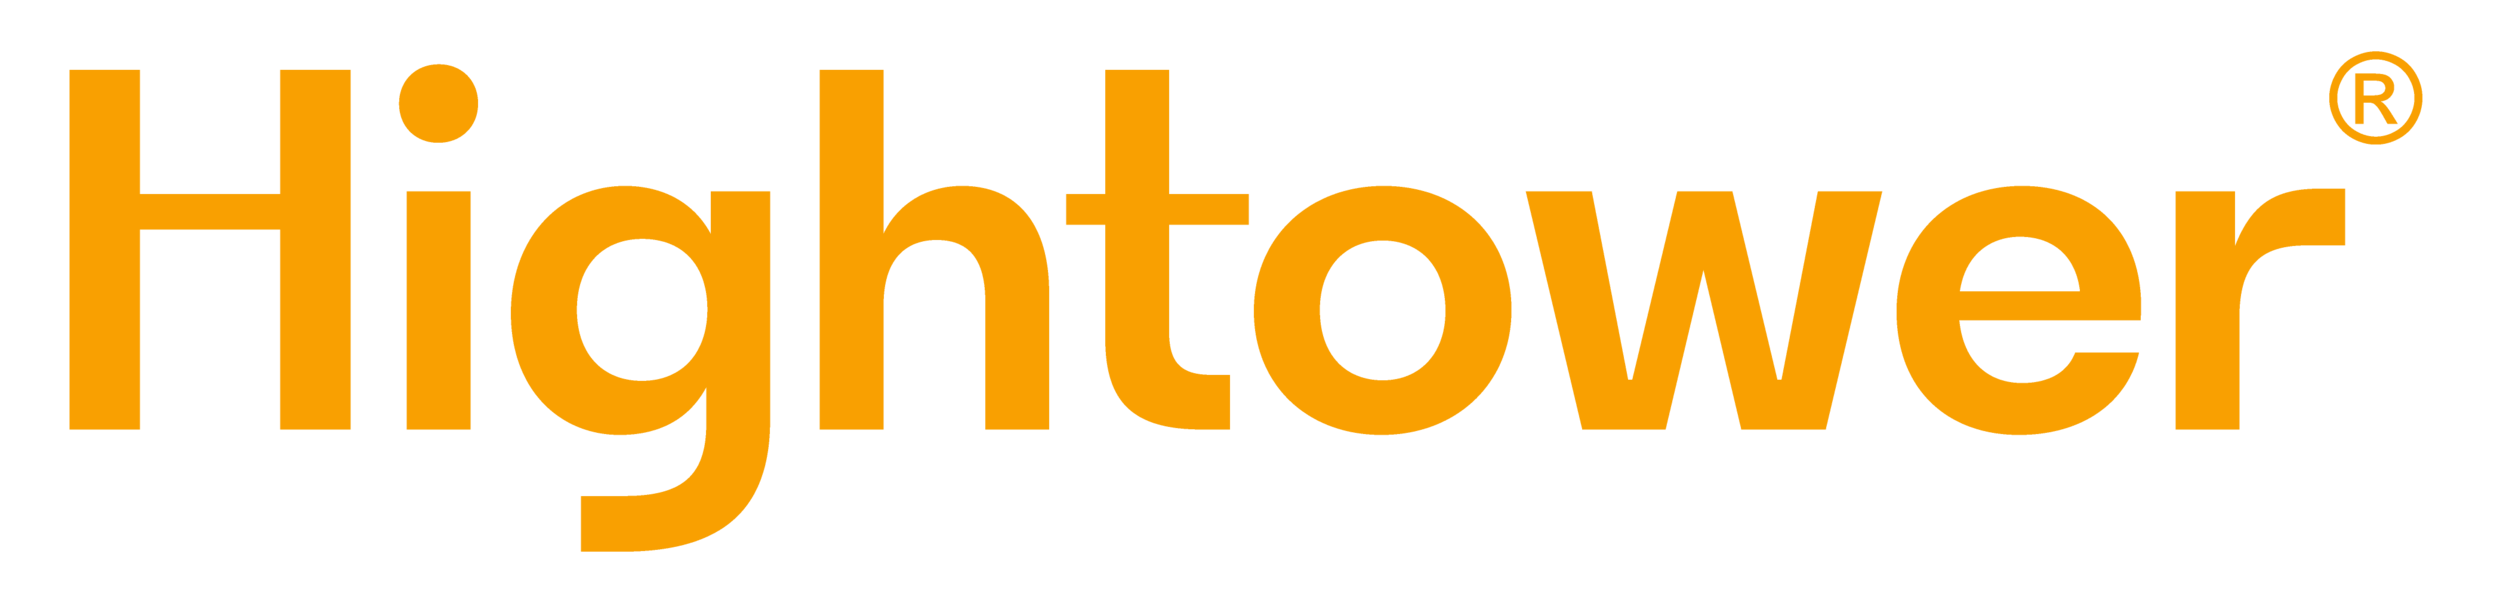 hightower_RT_orange_logo.png